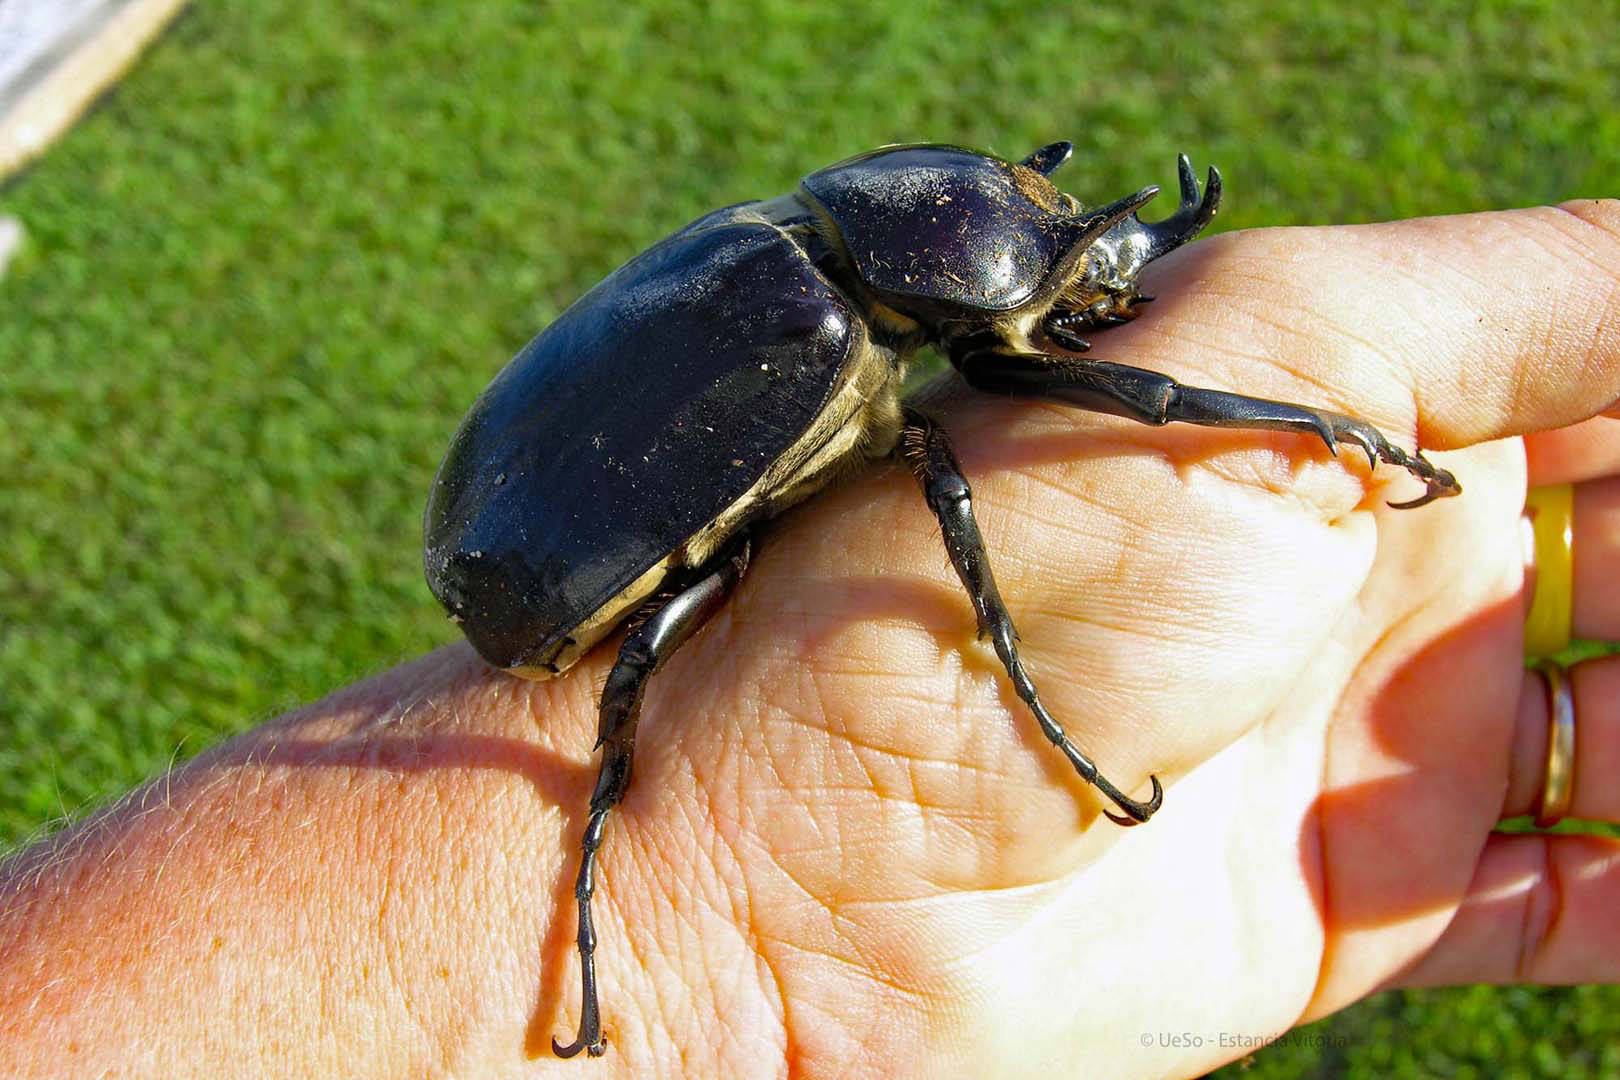 escaravelho preto